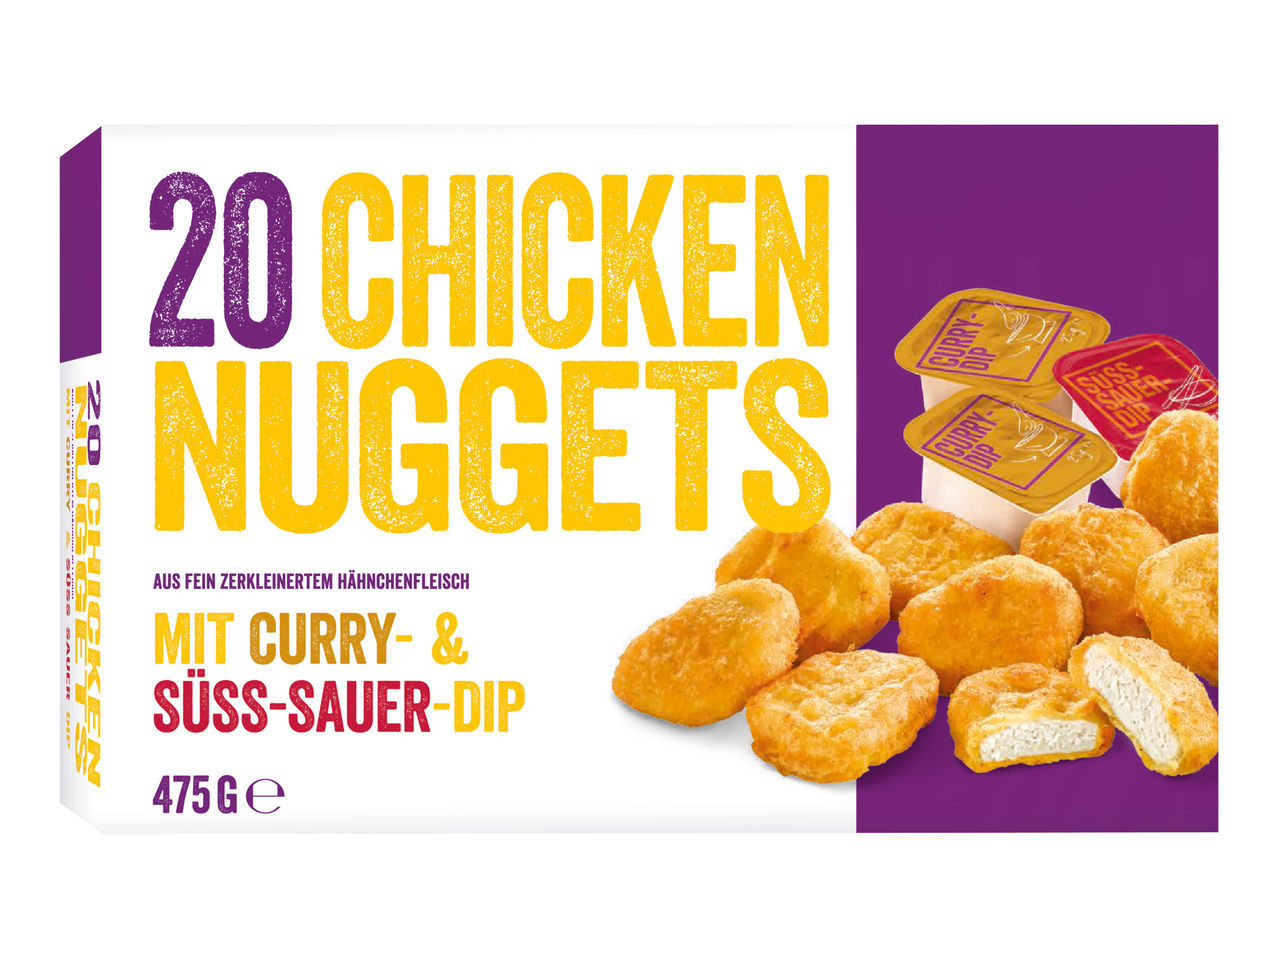 Chicken Nuggets XXL